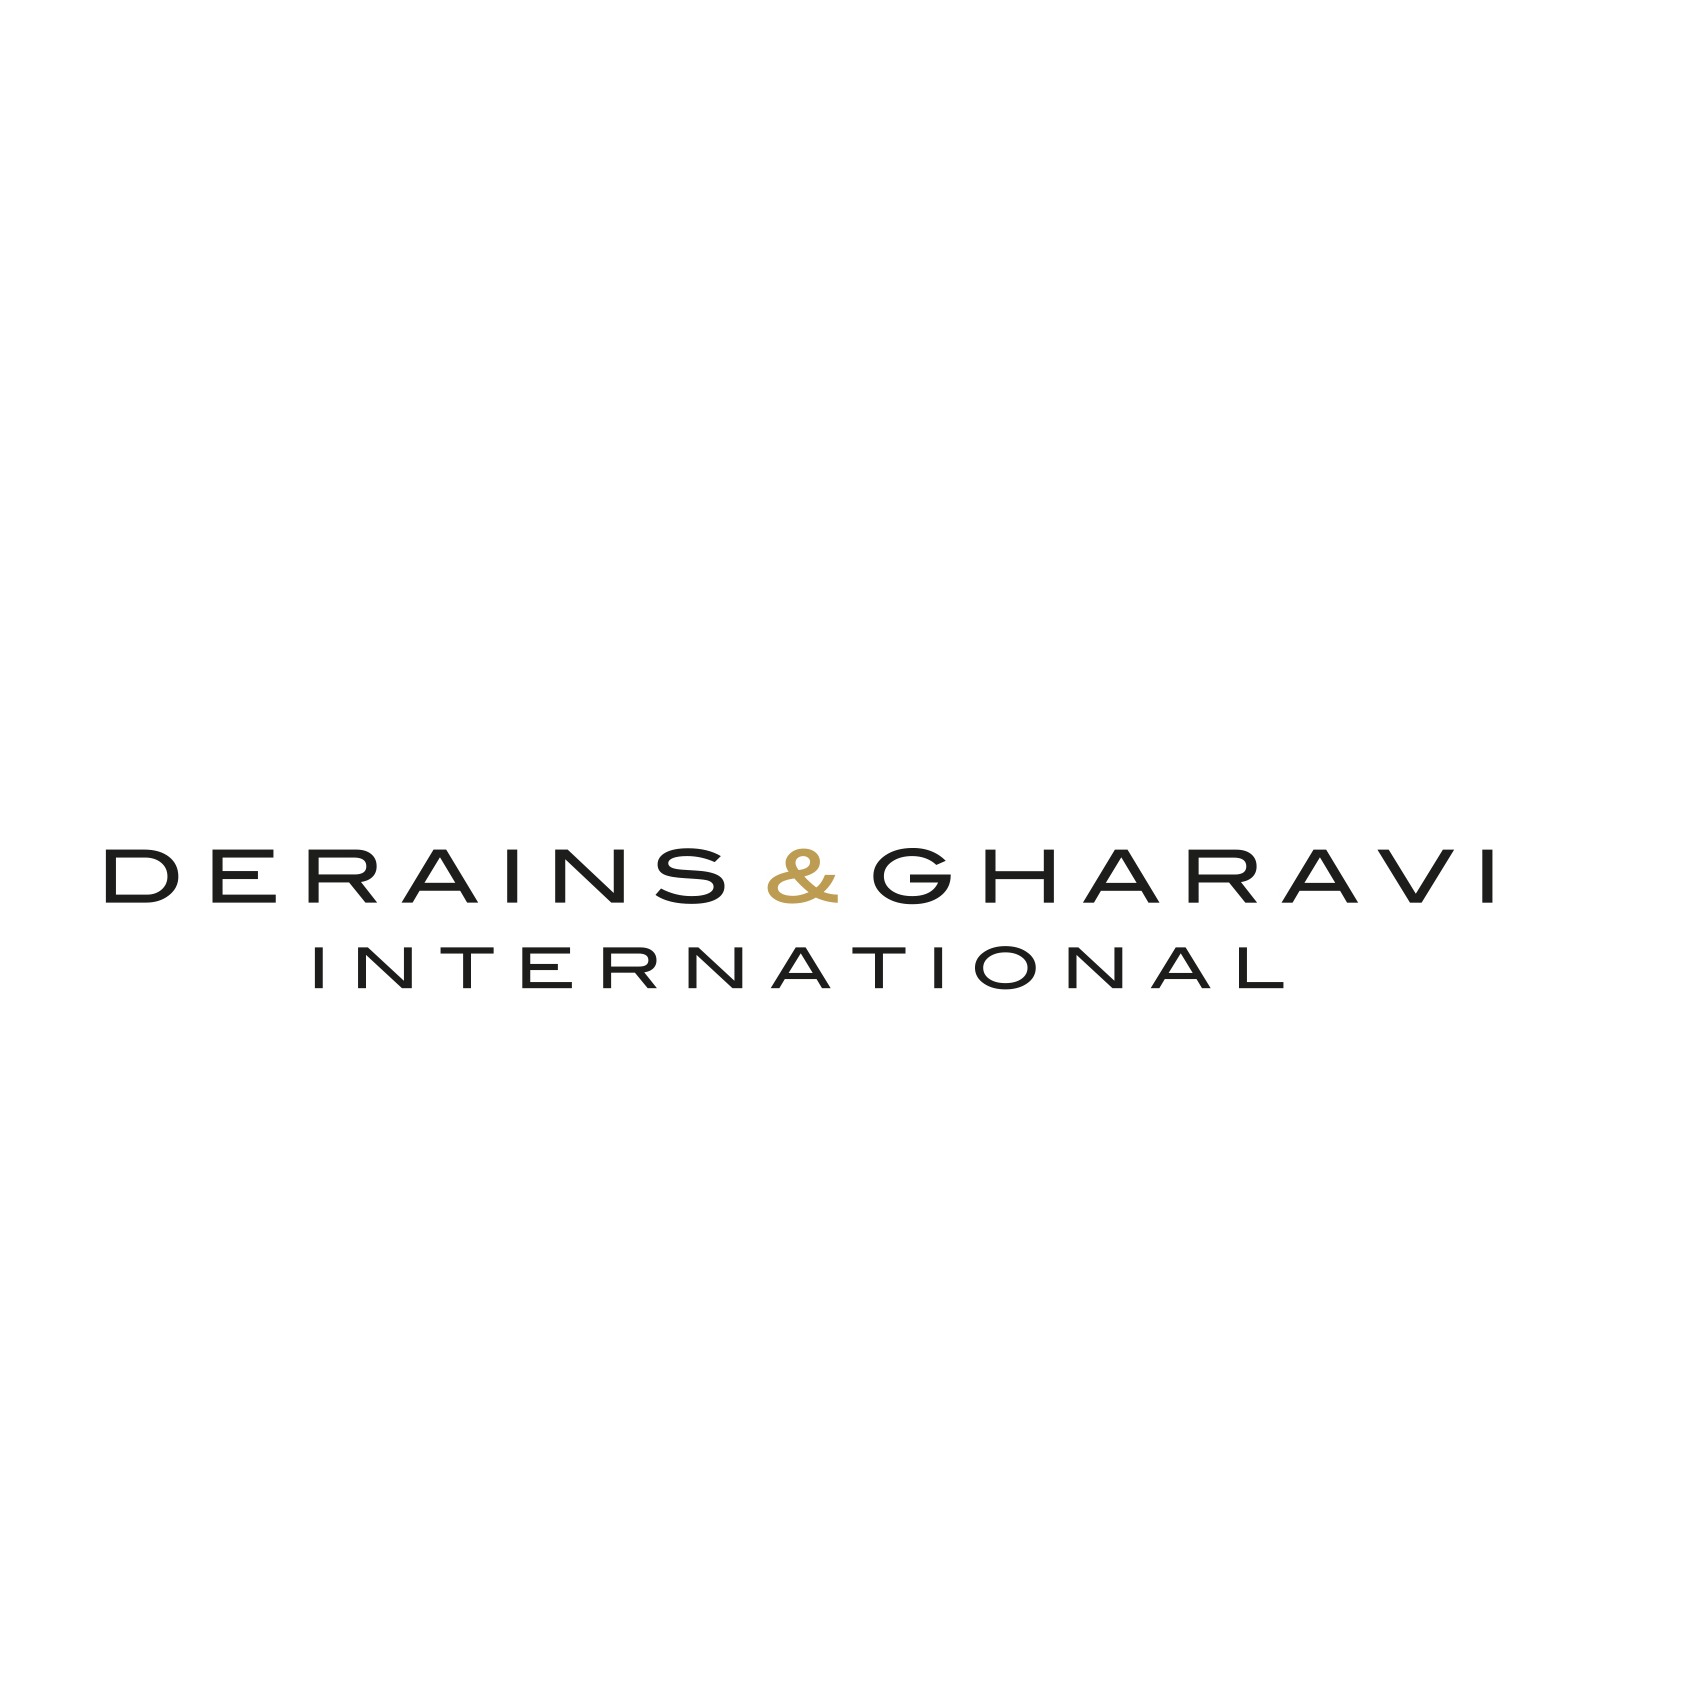 Derains & Gharavi